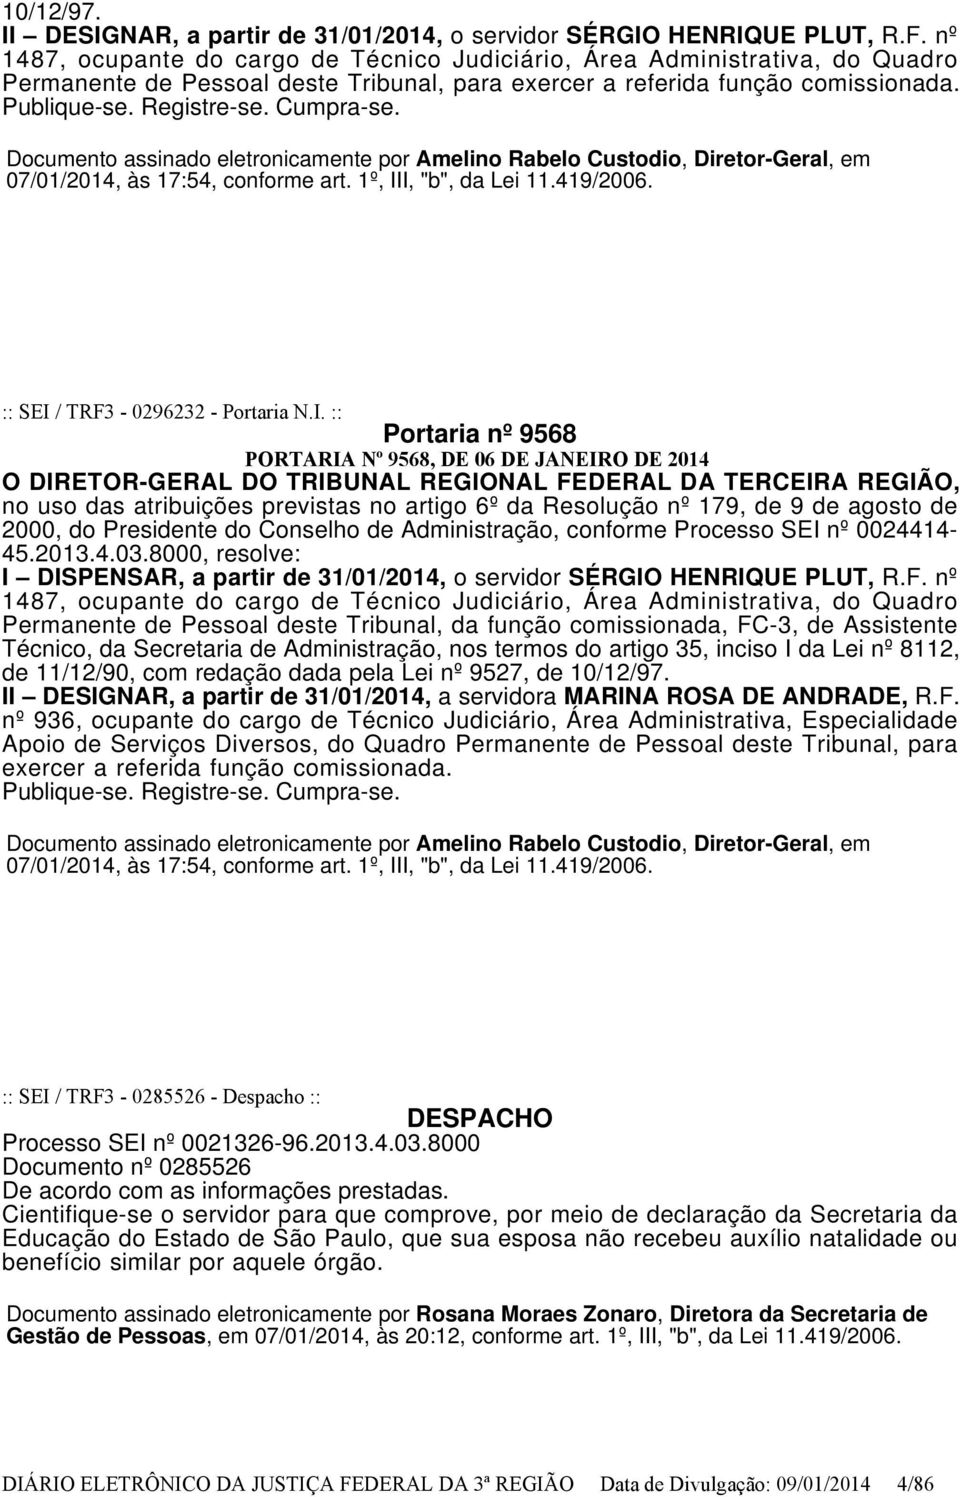 Documento assinado eletronicamente por Amelino Rabelo Custodio, Diretor-Geral, em 07/01/2014, às 17:54, conforme art. 1º, II